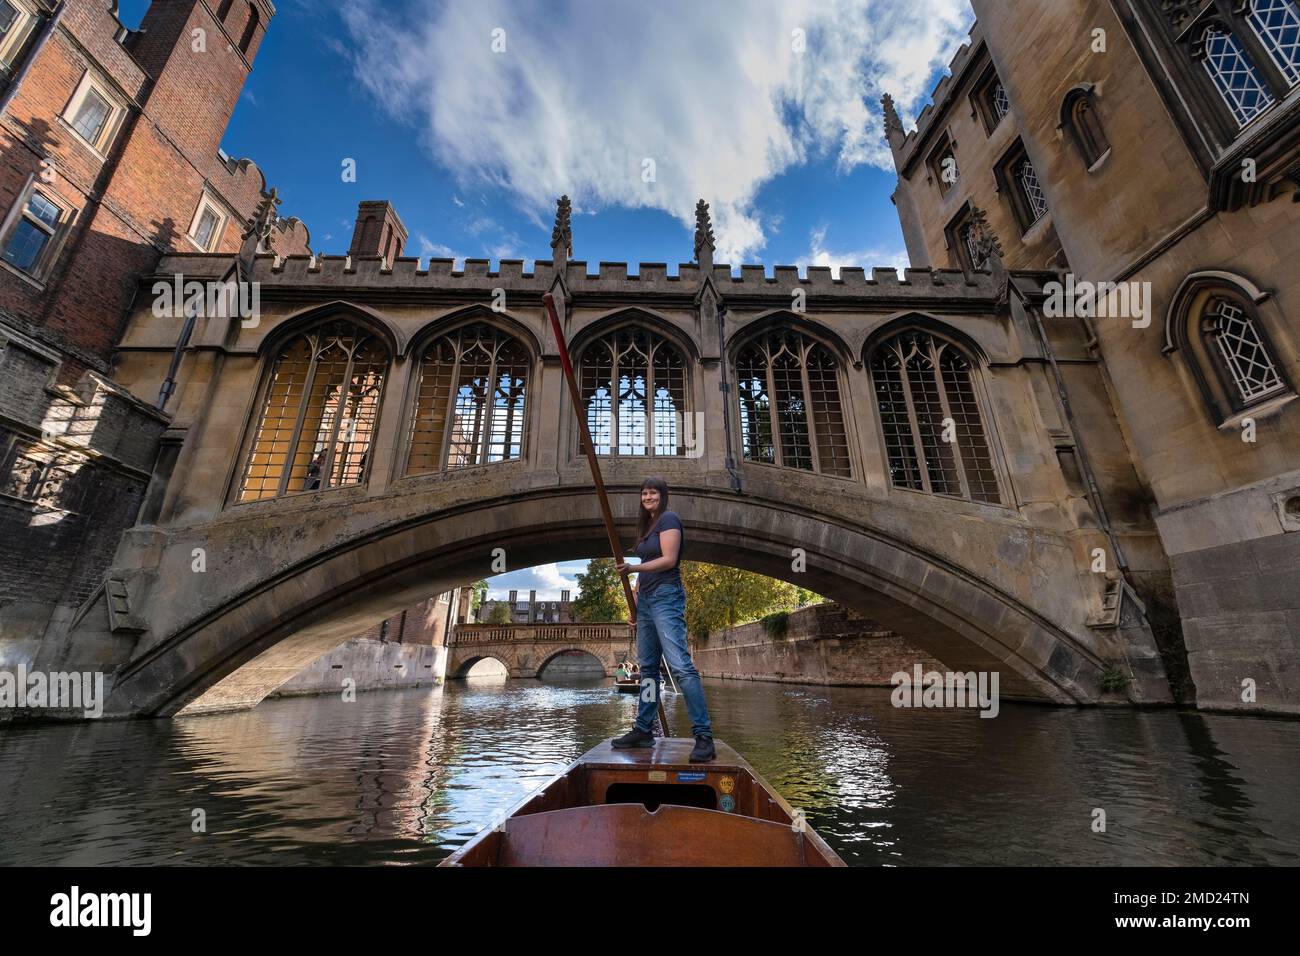 Cambridge étudiant punting sous le pont des Soupirs sur la rivière Cam, St Johns College Cambridge, Cambridge University, Cambridge, Angleterre, Royaume-Uni Banque D'Images